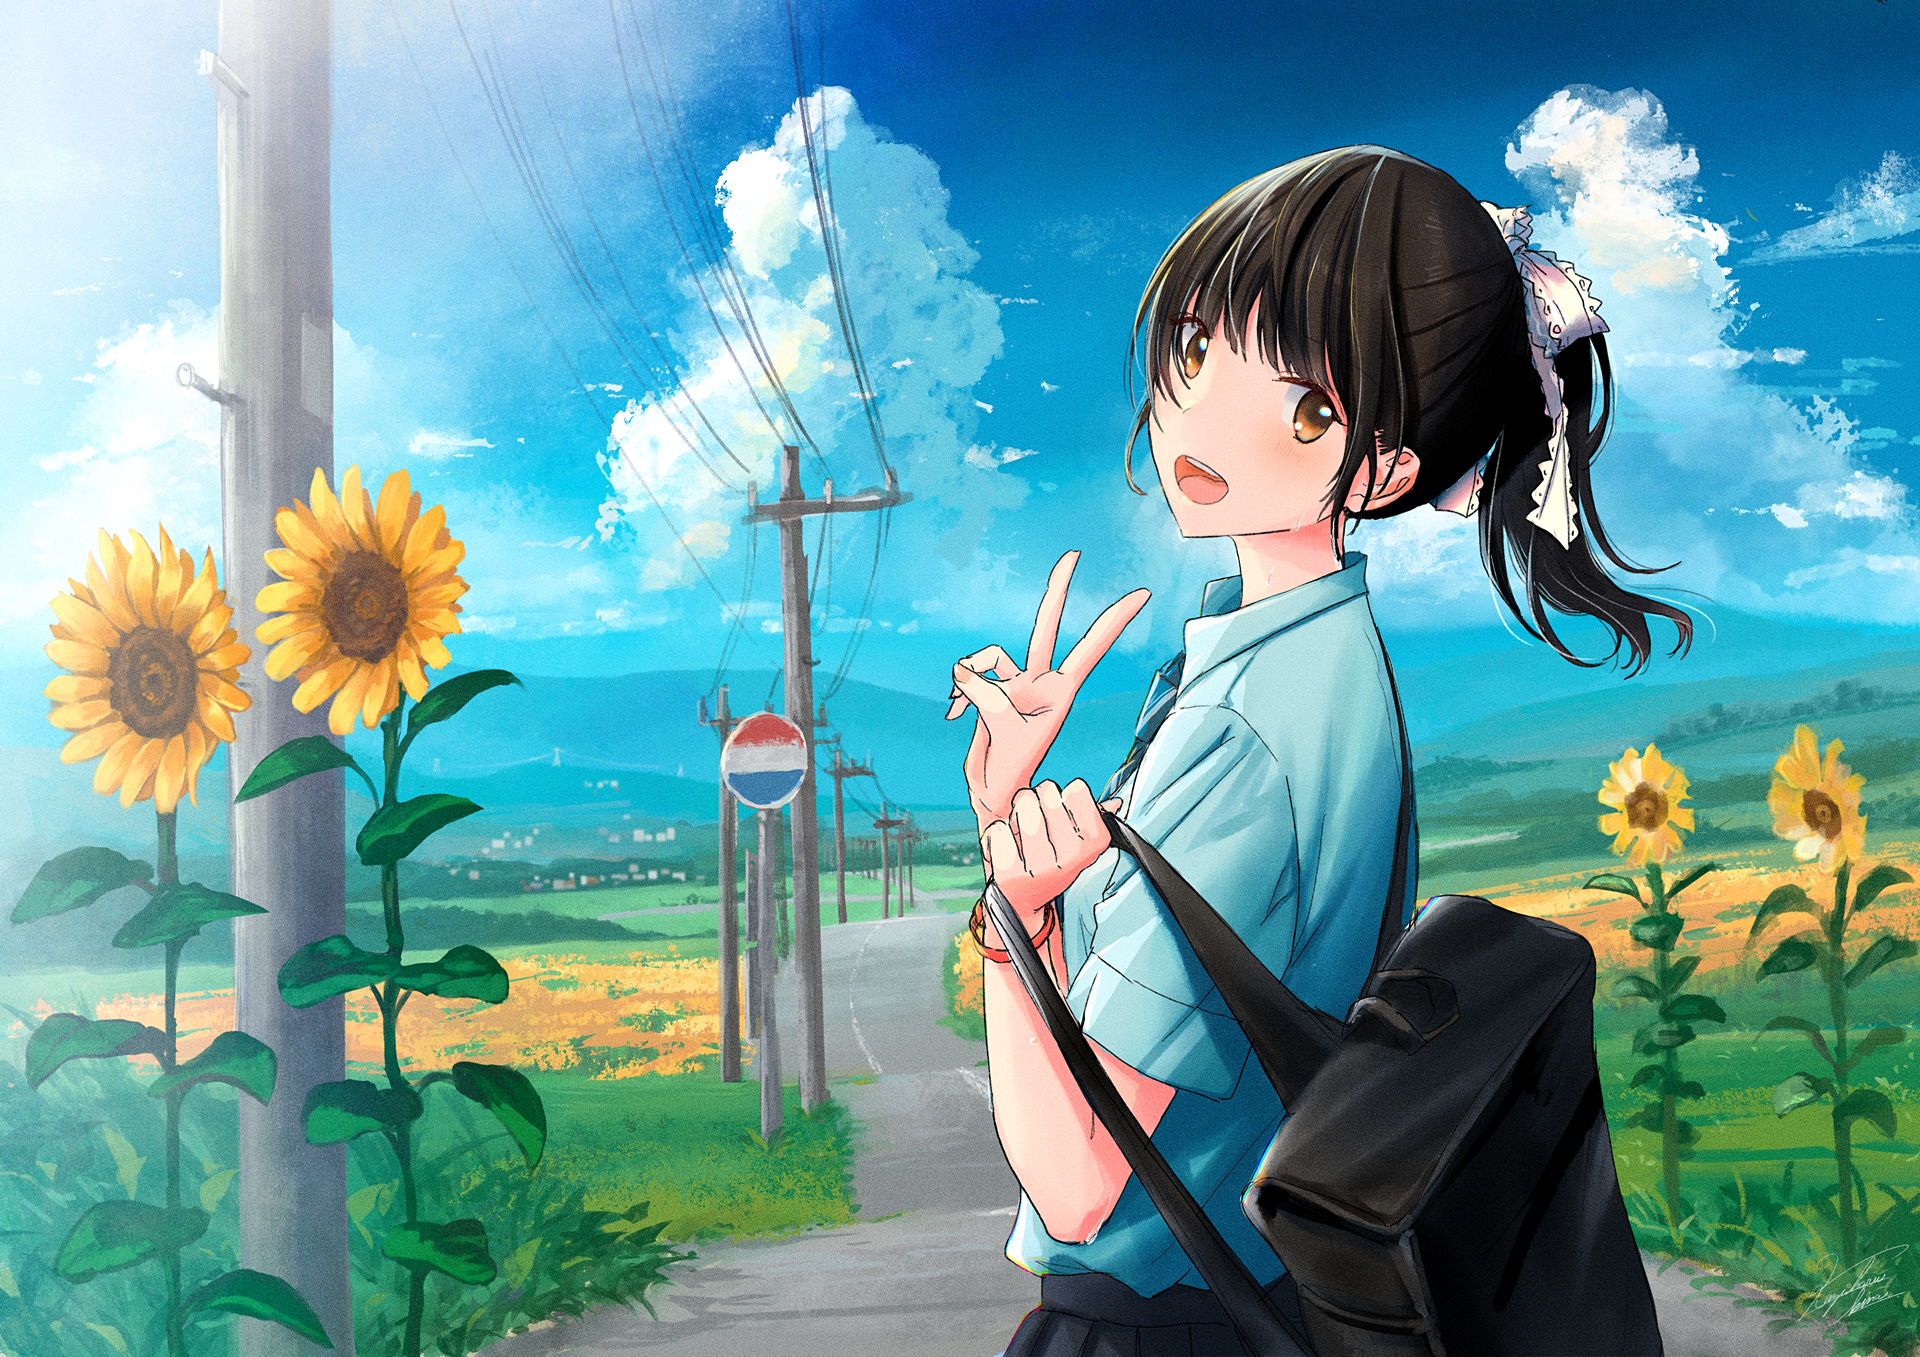 Anime Girl HD Wallpaper - Phong cách Anime luôn có sức hút đặc biệt. Và với bộ sưu tập hình nền Anime Girl HD này, bạn có thể dễ dàng trang trí máy tính, điện thoại hoặc tường nhà của mình. Cùng chiêm ngưỡng vẻ đẹp cuốn hút của các cô gái Anime nhé!